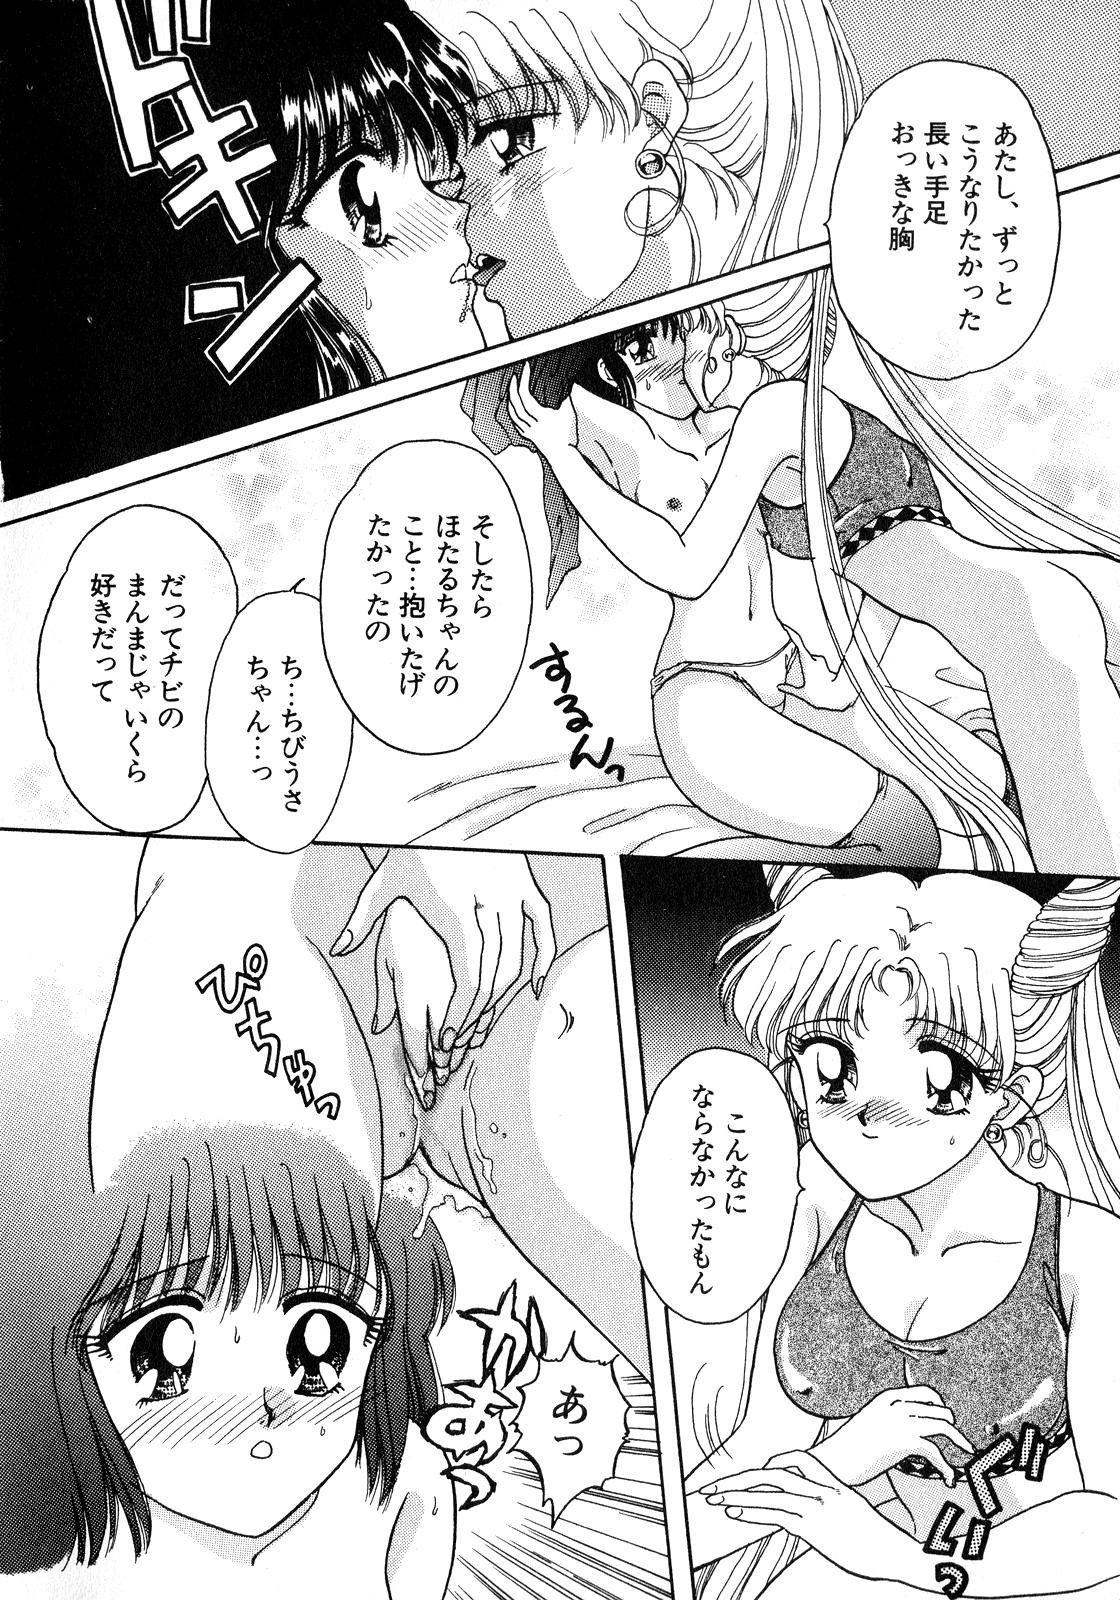 Butt Plug Lunatic Party 8 - Sailor moon Voyeur - Page 13